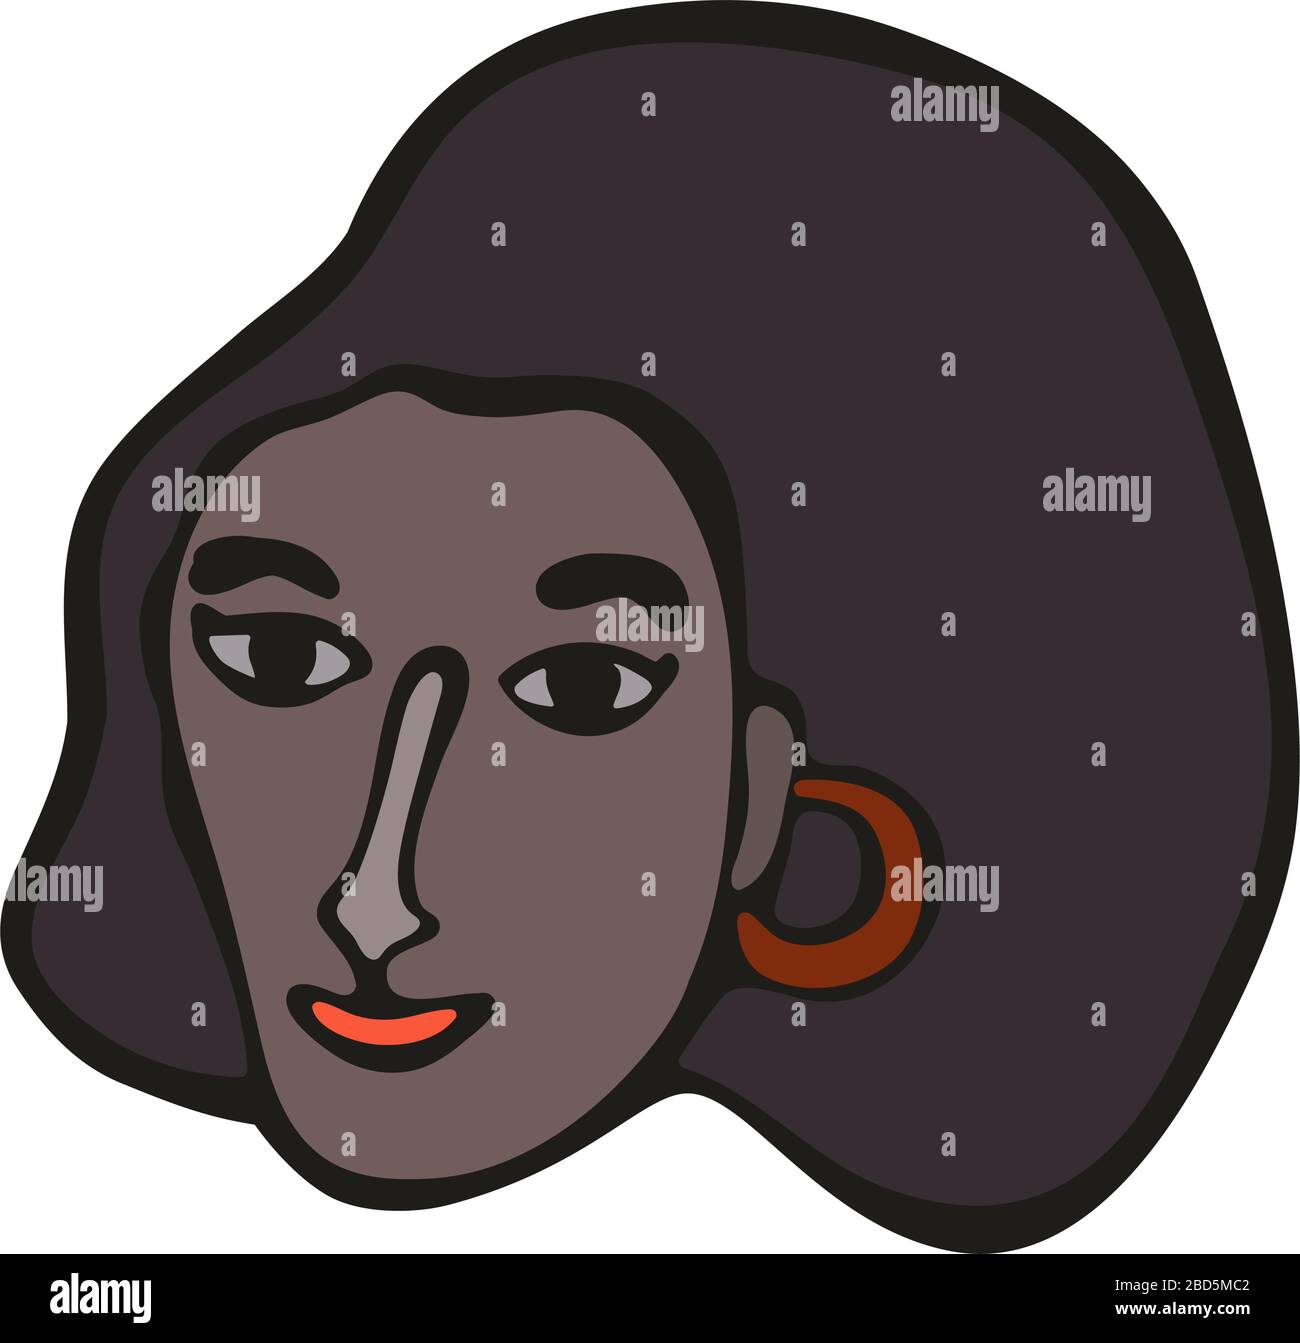 Ritratto femminile africano. Illustrazione lineare moderna e minimalista. Arte croccante Donna viso vivace. L'idea di uguaglianza delle nazionalità sul pianeta Terra Illustrazione Vettoriale